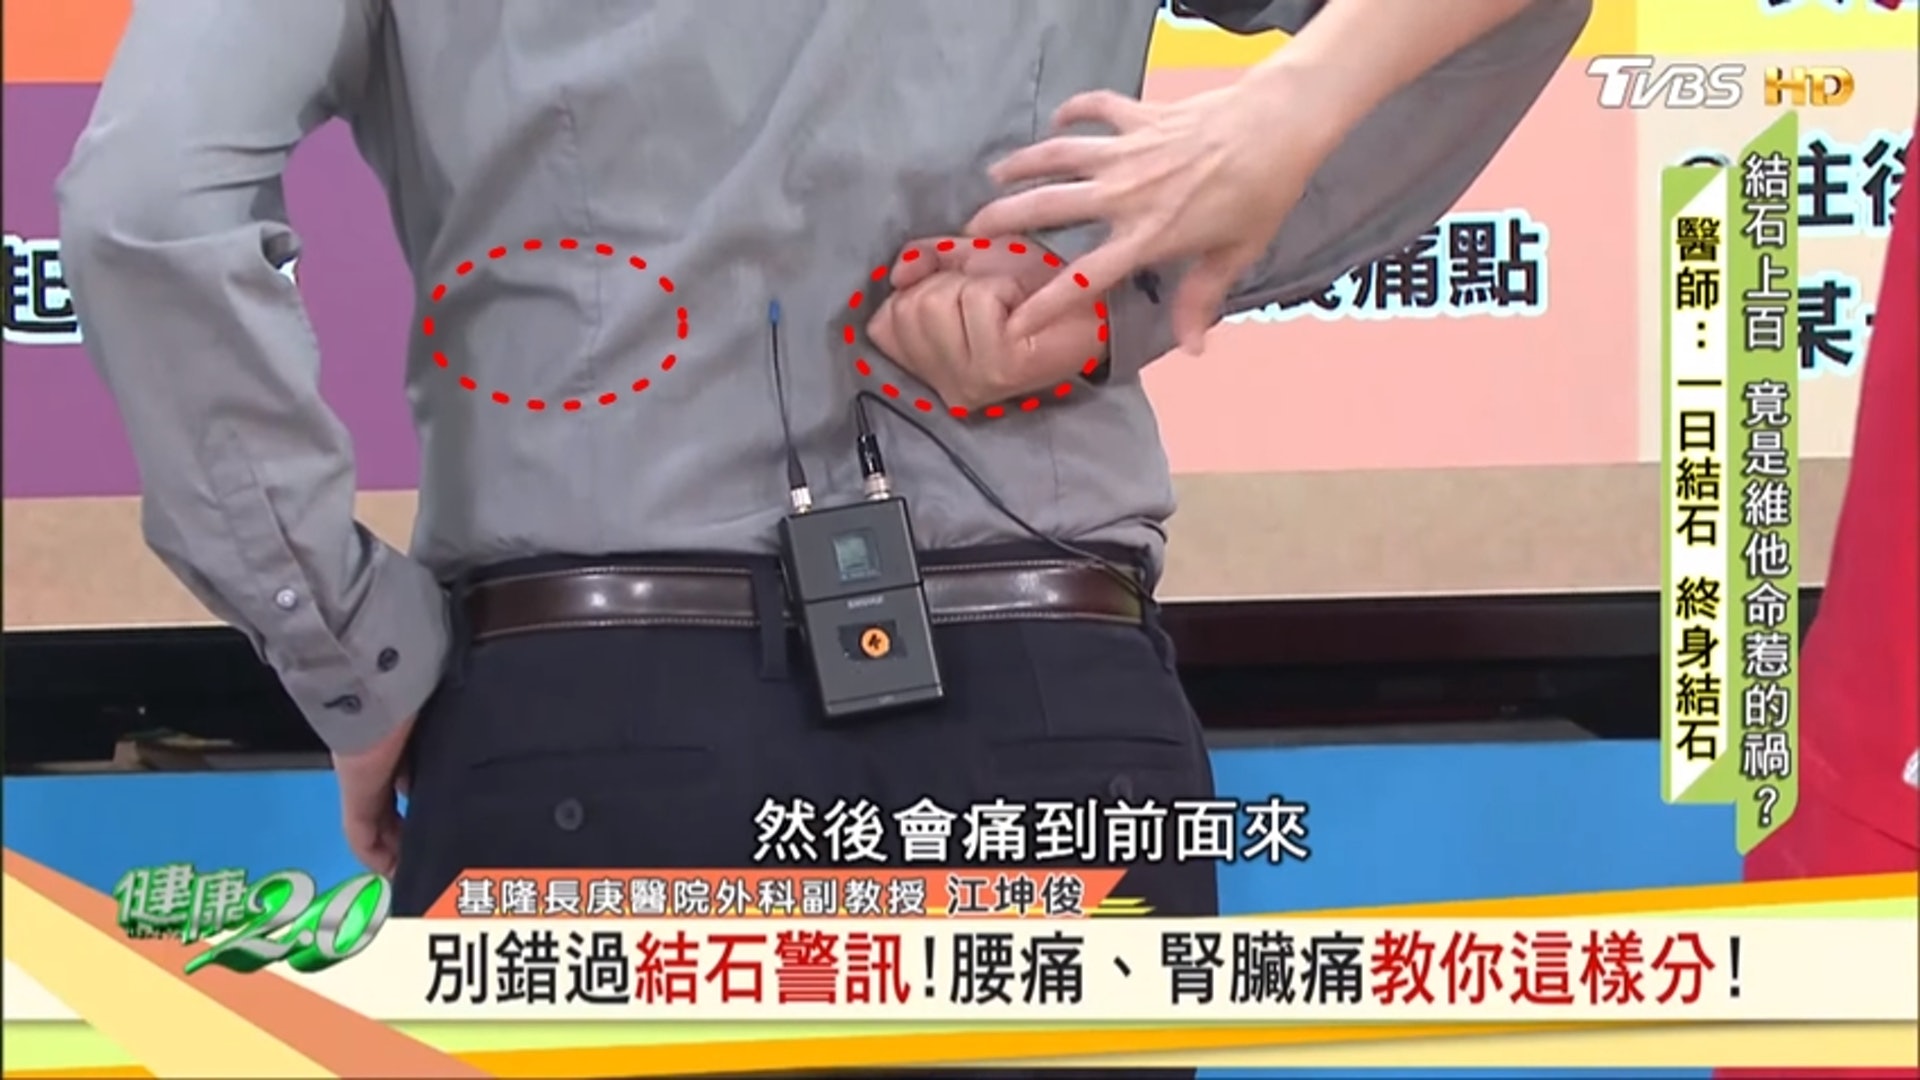 紅色圓圈為腎臟位置（台灣TVBS頻道《健康2.0》截圖）